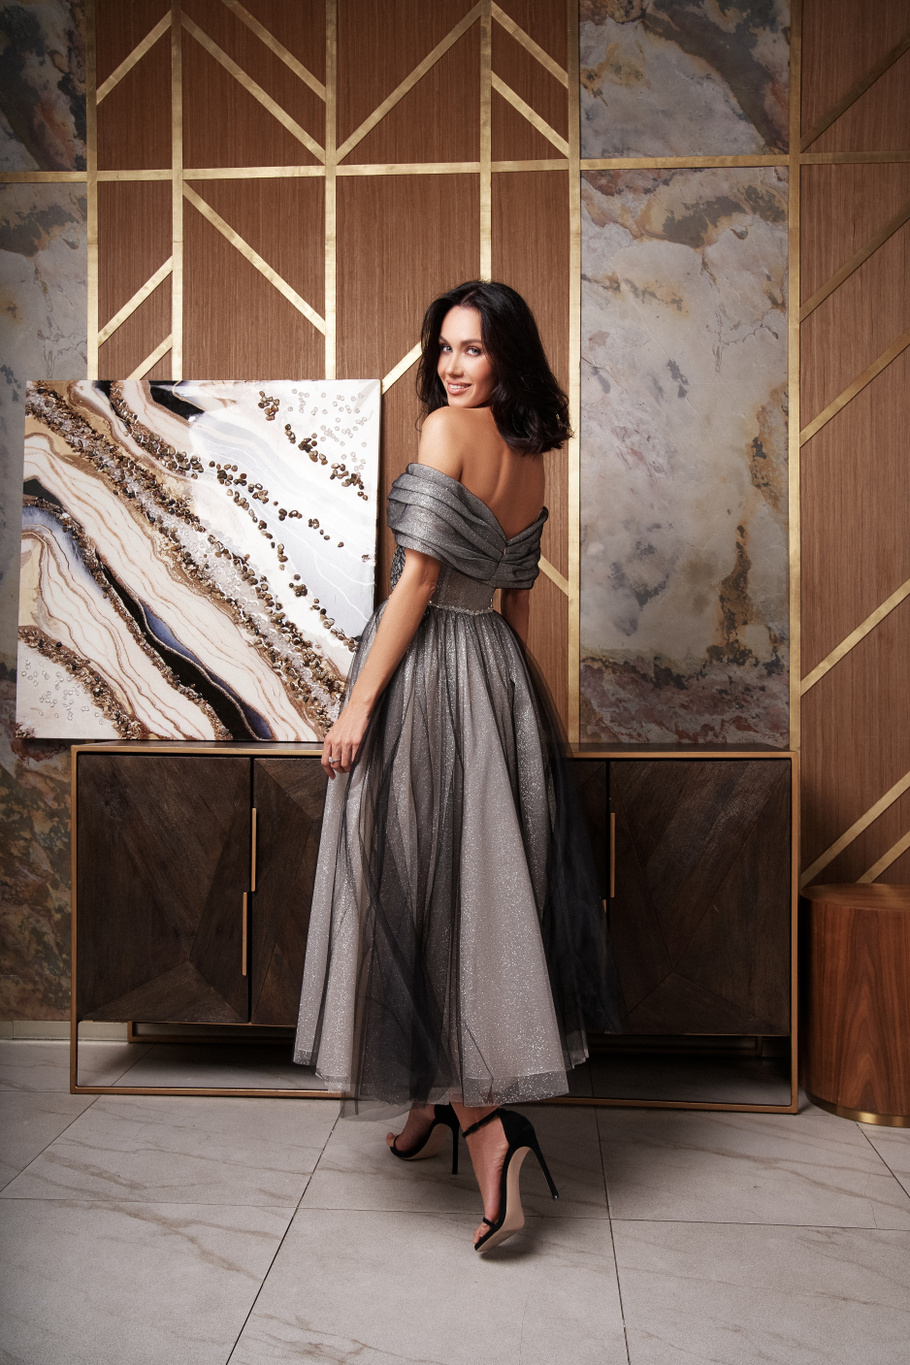 Купить вечернее платье «Мистая» Мэрри Марк из коллекции Спаркл Шайн 2023 года в салоне «Мэри Трюфель»